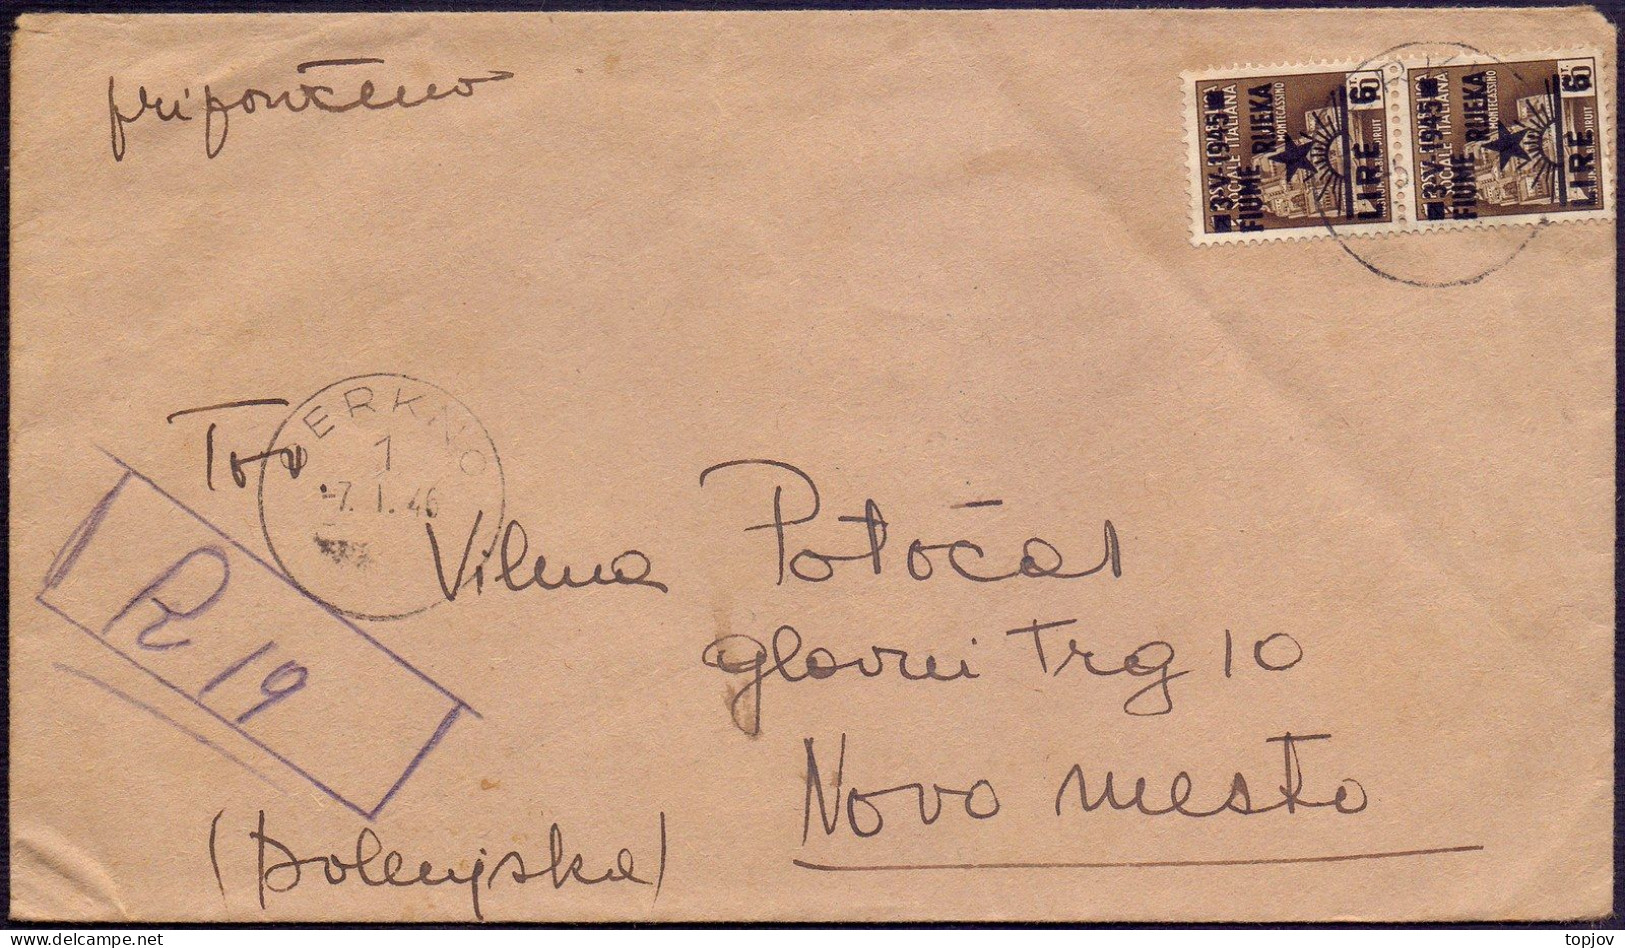 SLOVENIA LITORALE - CERKNO To NOVO MESTO - RECOM. LETTER 12Lira - 7. 1. 1946. - Marcophilia